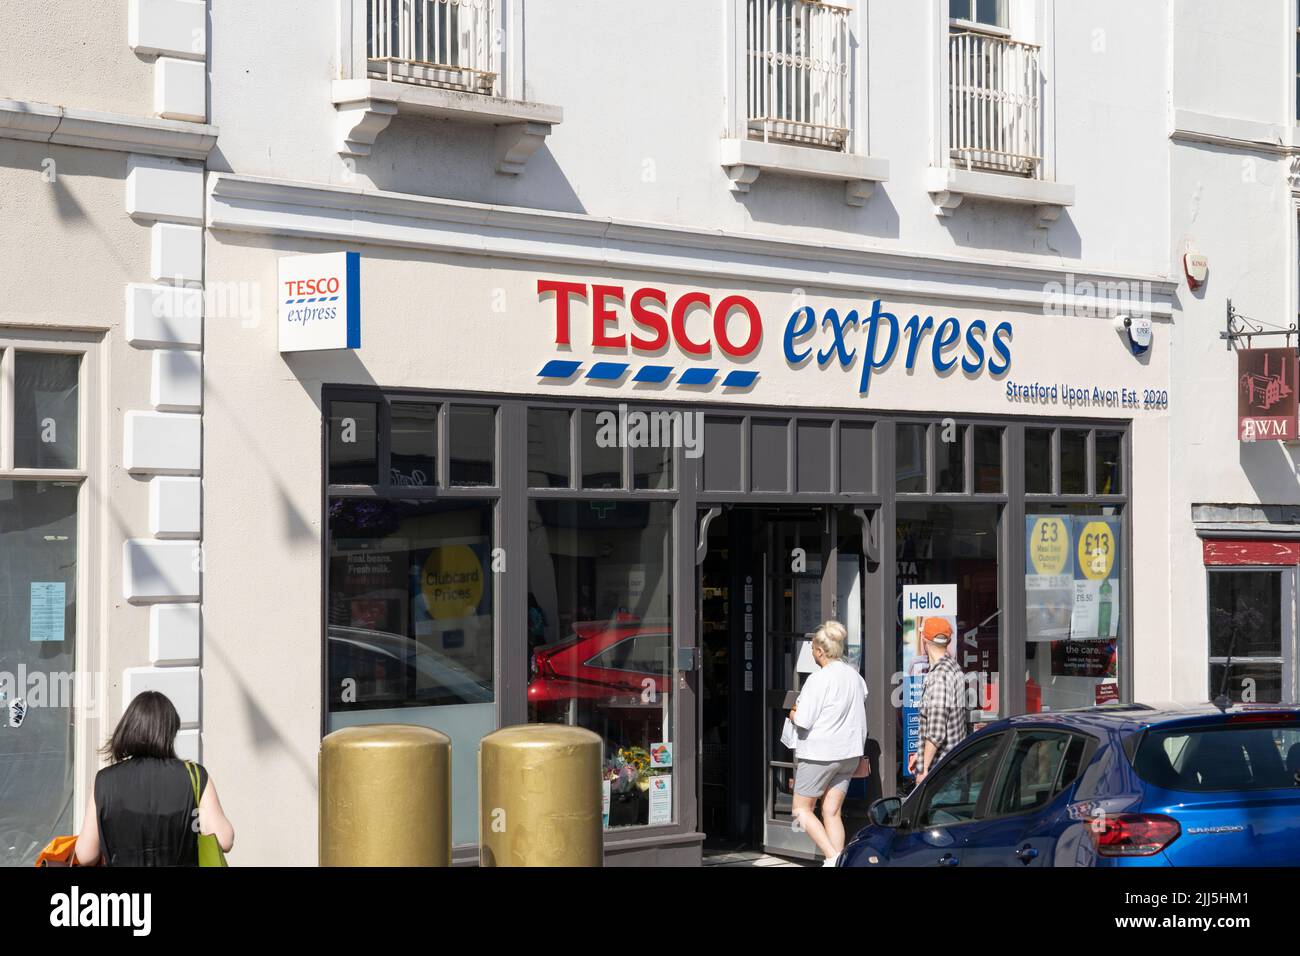 Einkäufer, die einen Tesco Express auf der Bridge Street in Stratford-upon-Avon, England, betreten. Konzept - Lebenshaltungskosten, Lebensmitteleinkauf, steigende Inflation Stockfoto